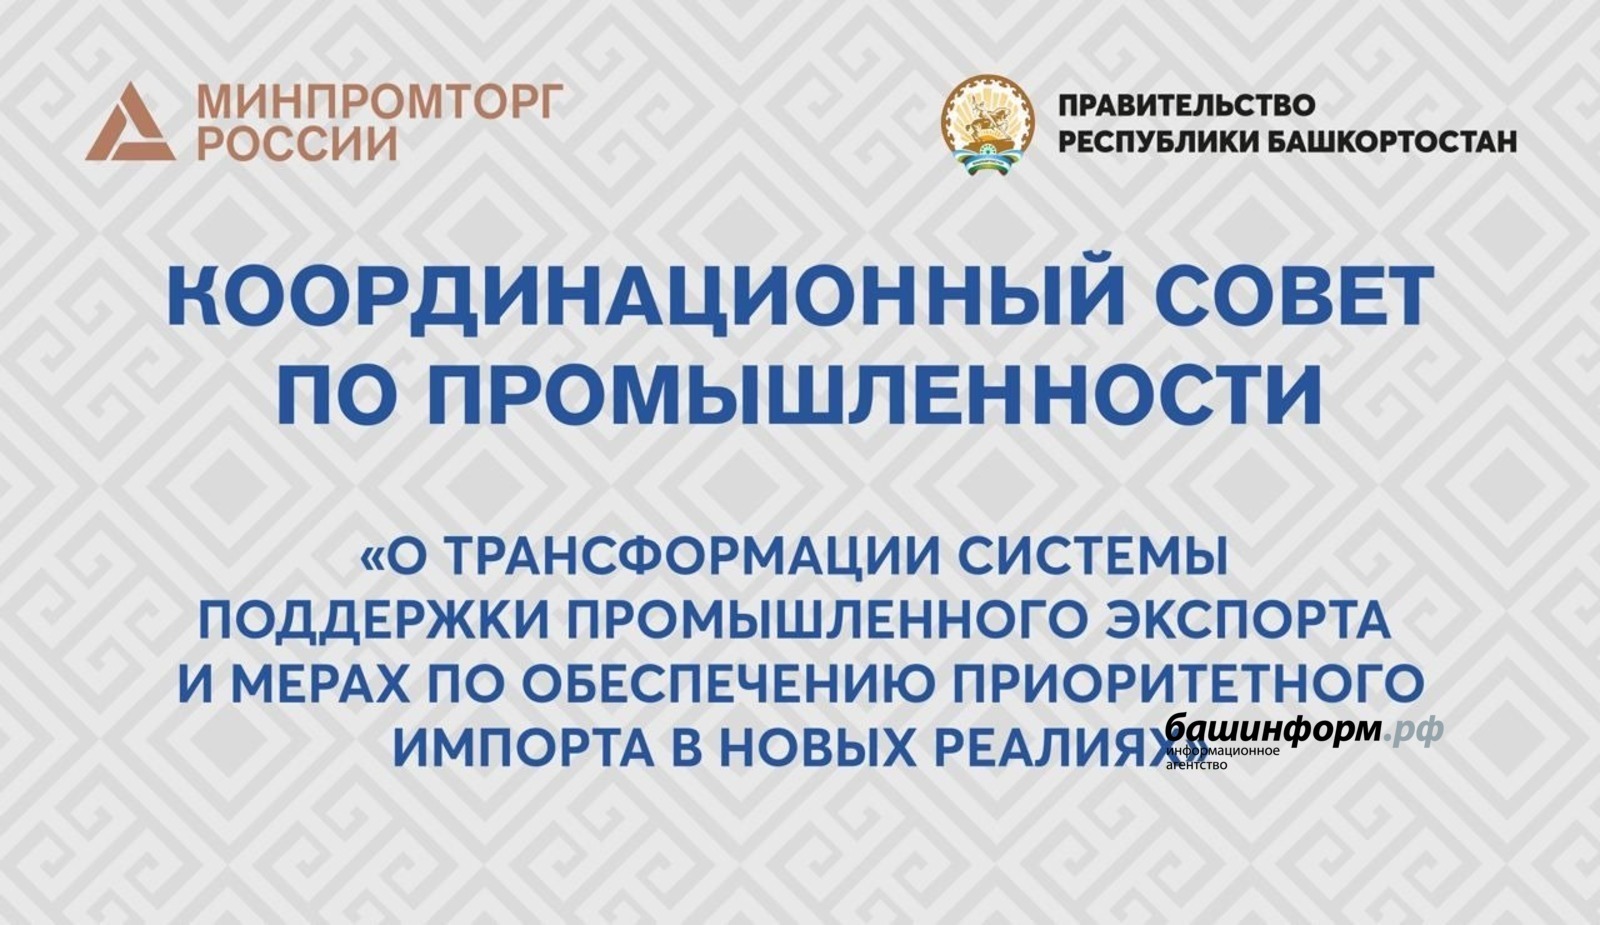 В Башкирии пройдет Координационный совет по промышленности с участием всех регионов России